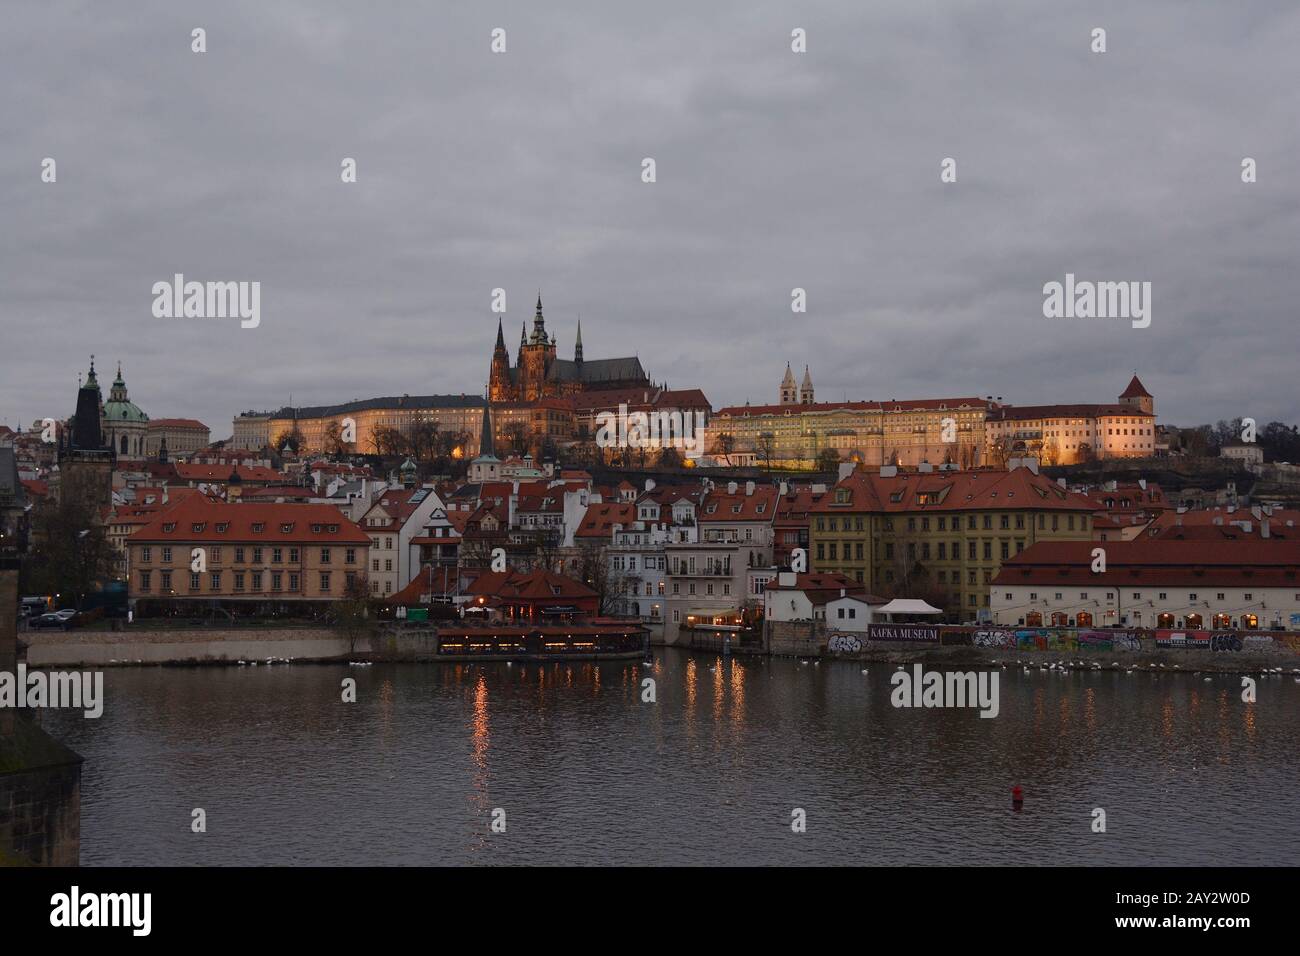 Prag, Tschechien - beleuchtete hradschin - Schloss mit dem Veitsdom Stockfoto